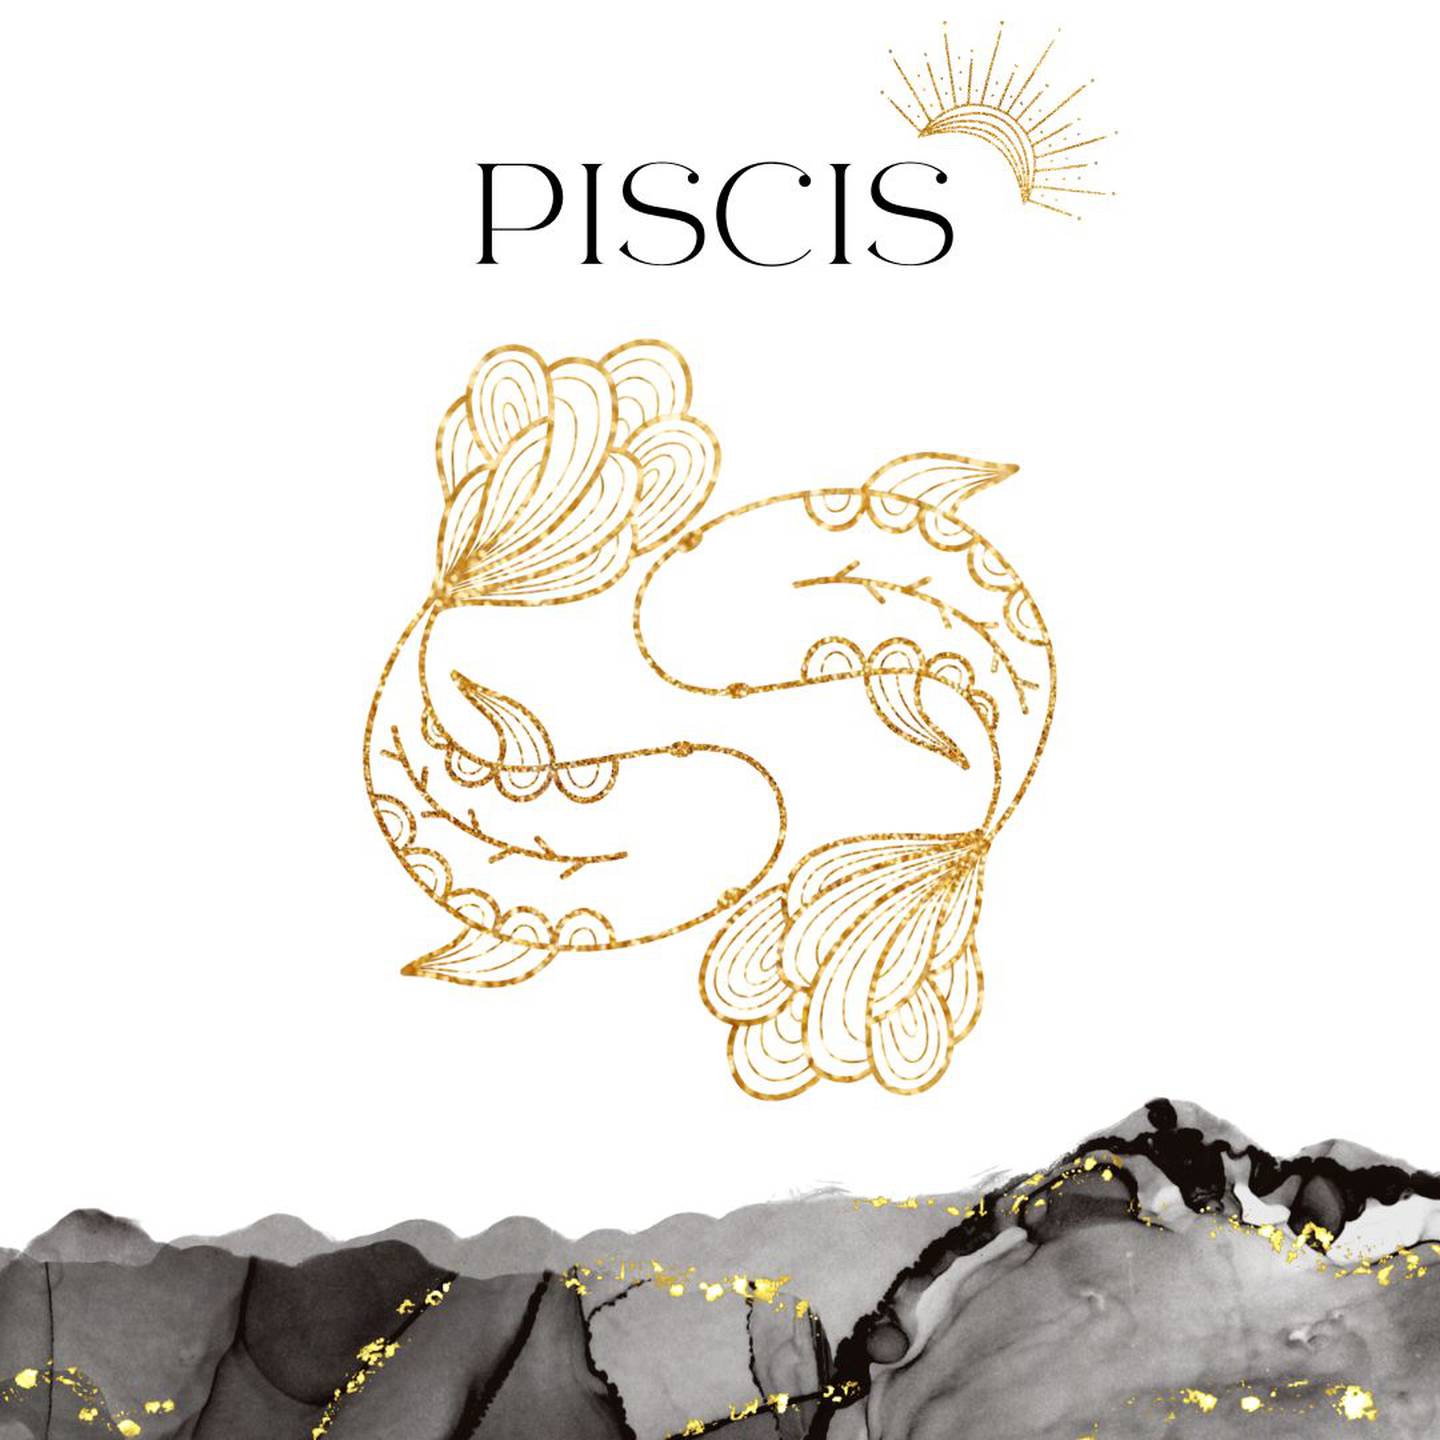 Palabra 'PISCIS' en letras grandes y negras en el centro. Debajo, símbolo del signo de Piscis: dos peces nadando en sentido contrario en dorado.